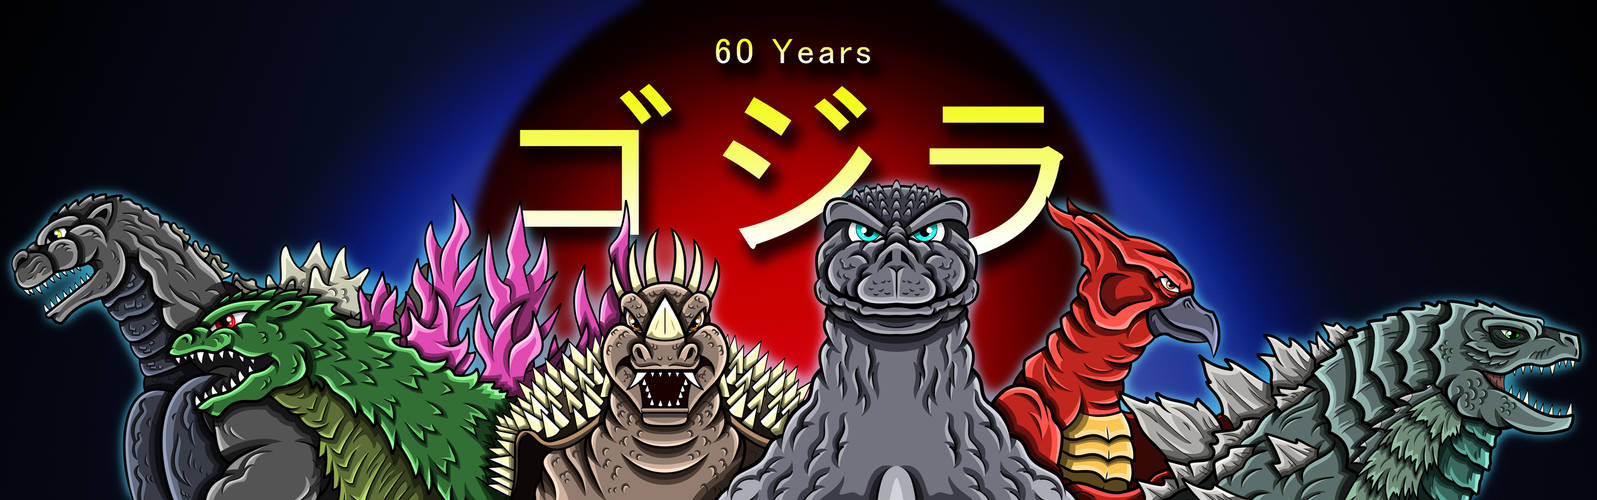 Godzilla 60th Anniversary Hail to the King by earthbaragon